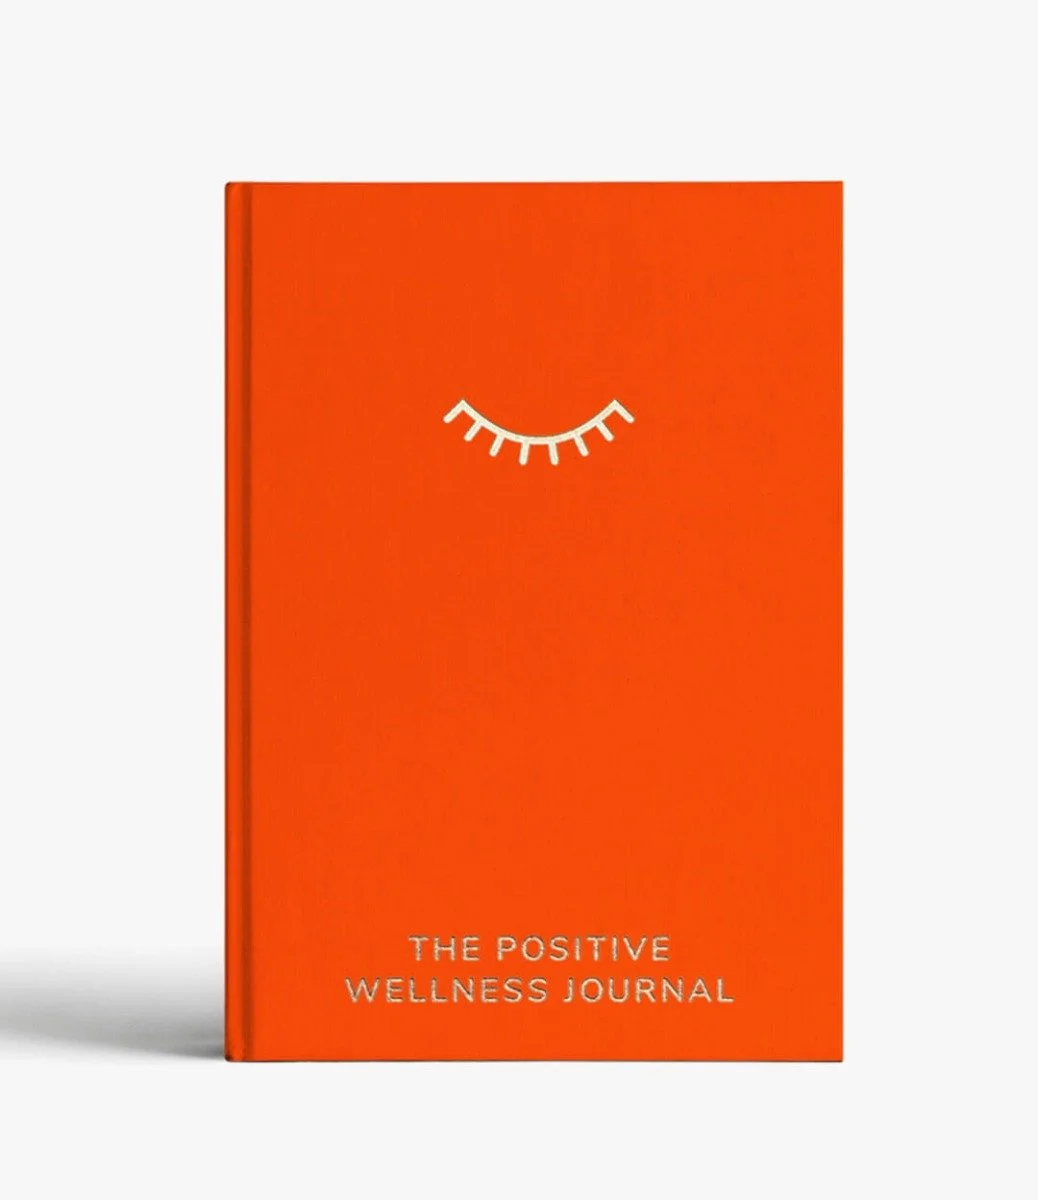 The Positive Wellness Journal